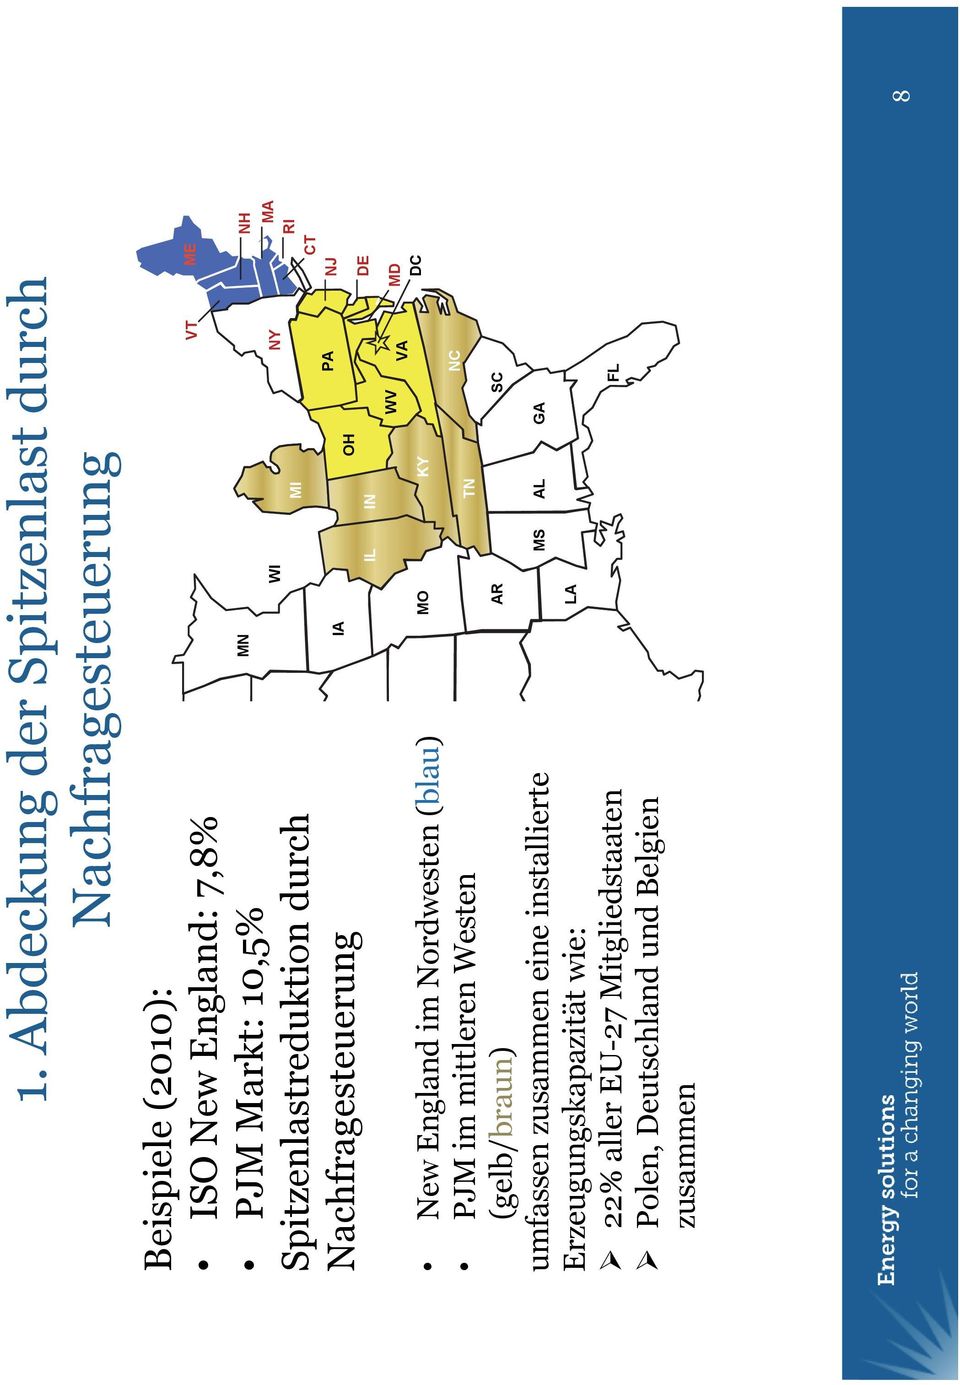 durch WY Nachfragesteuerung NV UT CO New England CA im Nordwesten (blau) PJM im mittleren Westen AZ (gelb/braun) umfassen